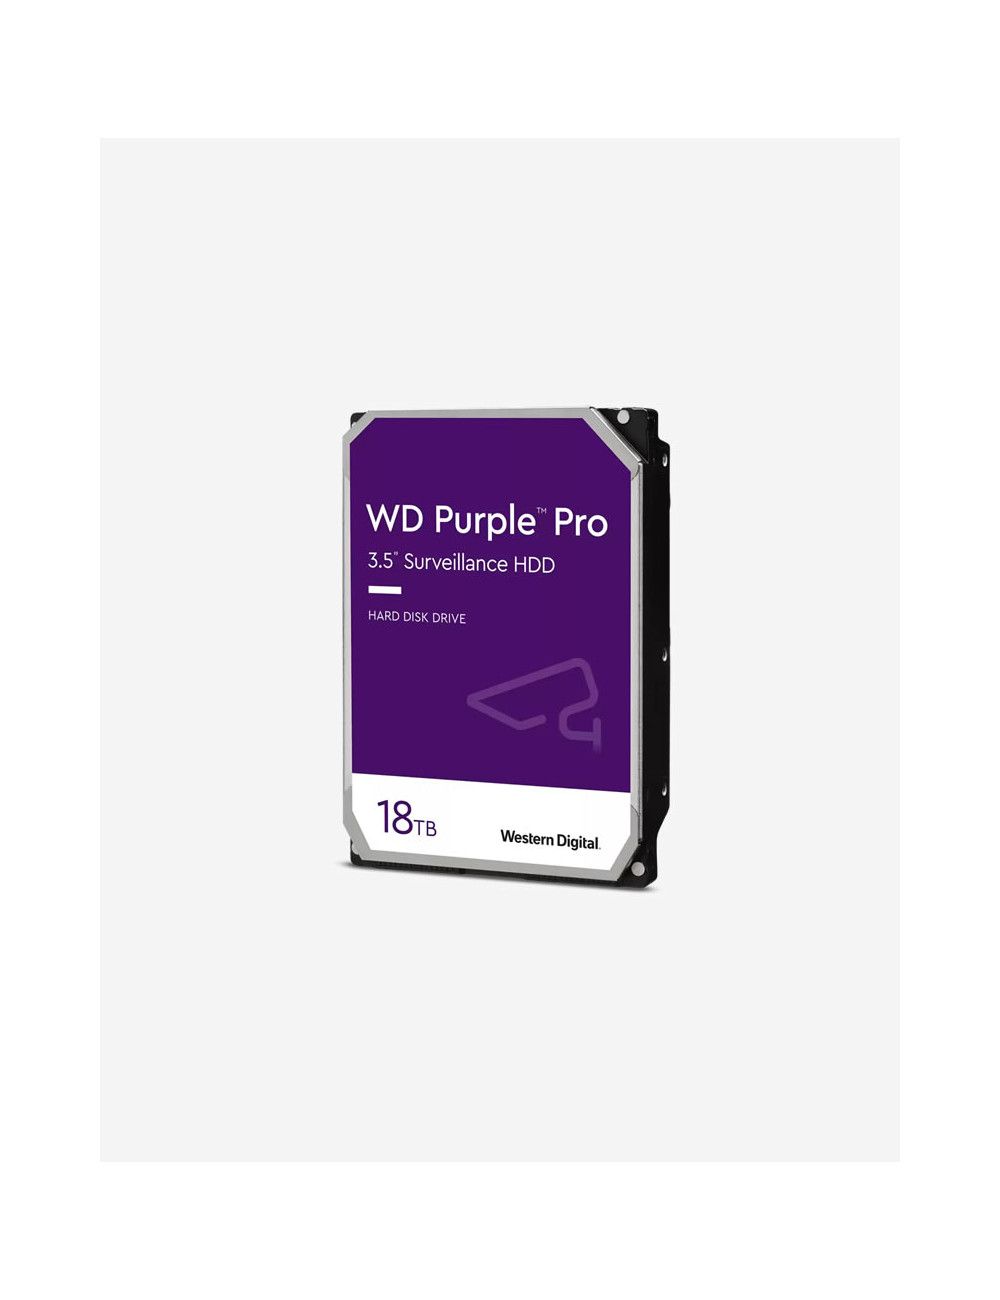 WD PURPLE PRO 18TB Unidad de disco duro de 3,5"